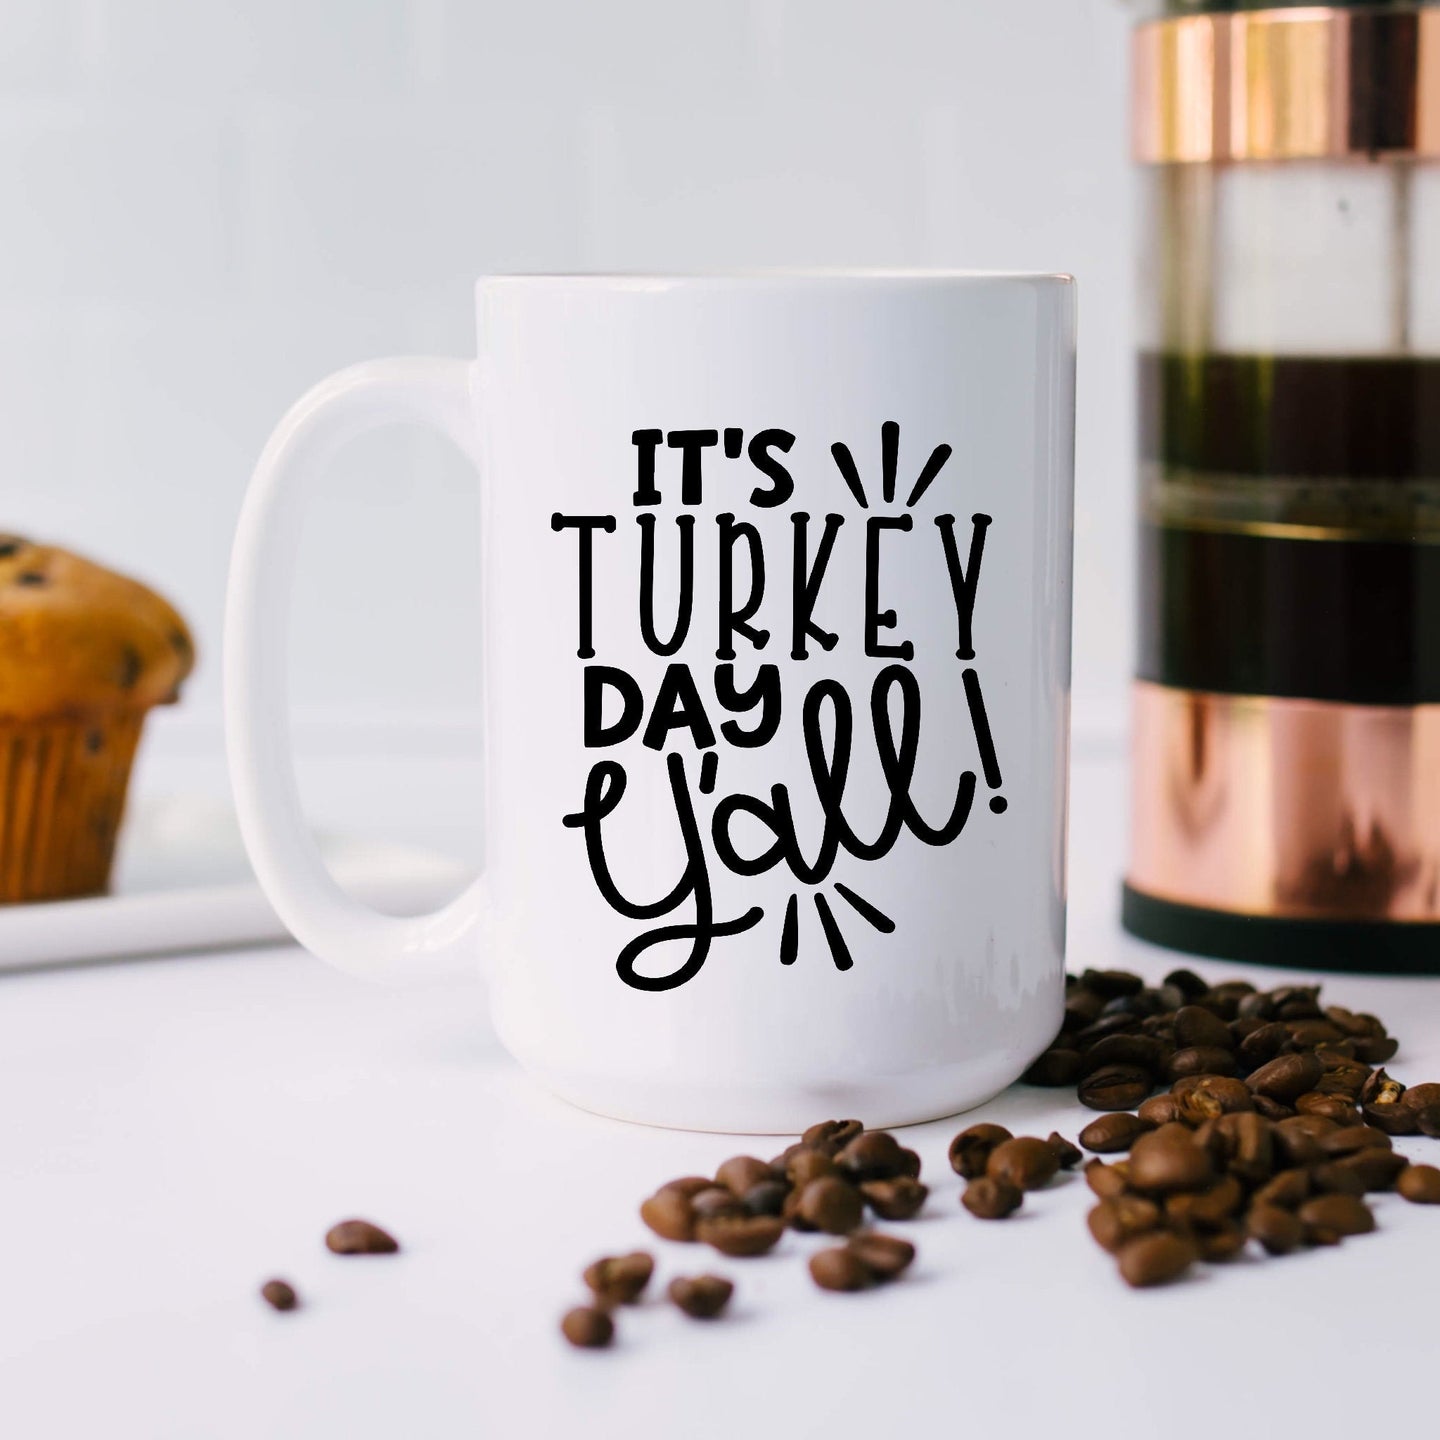 It's Turkey Day Y'all!